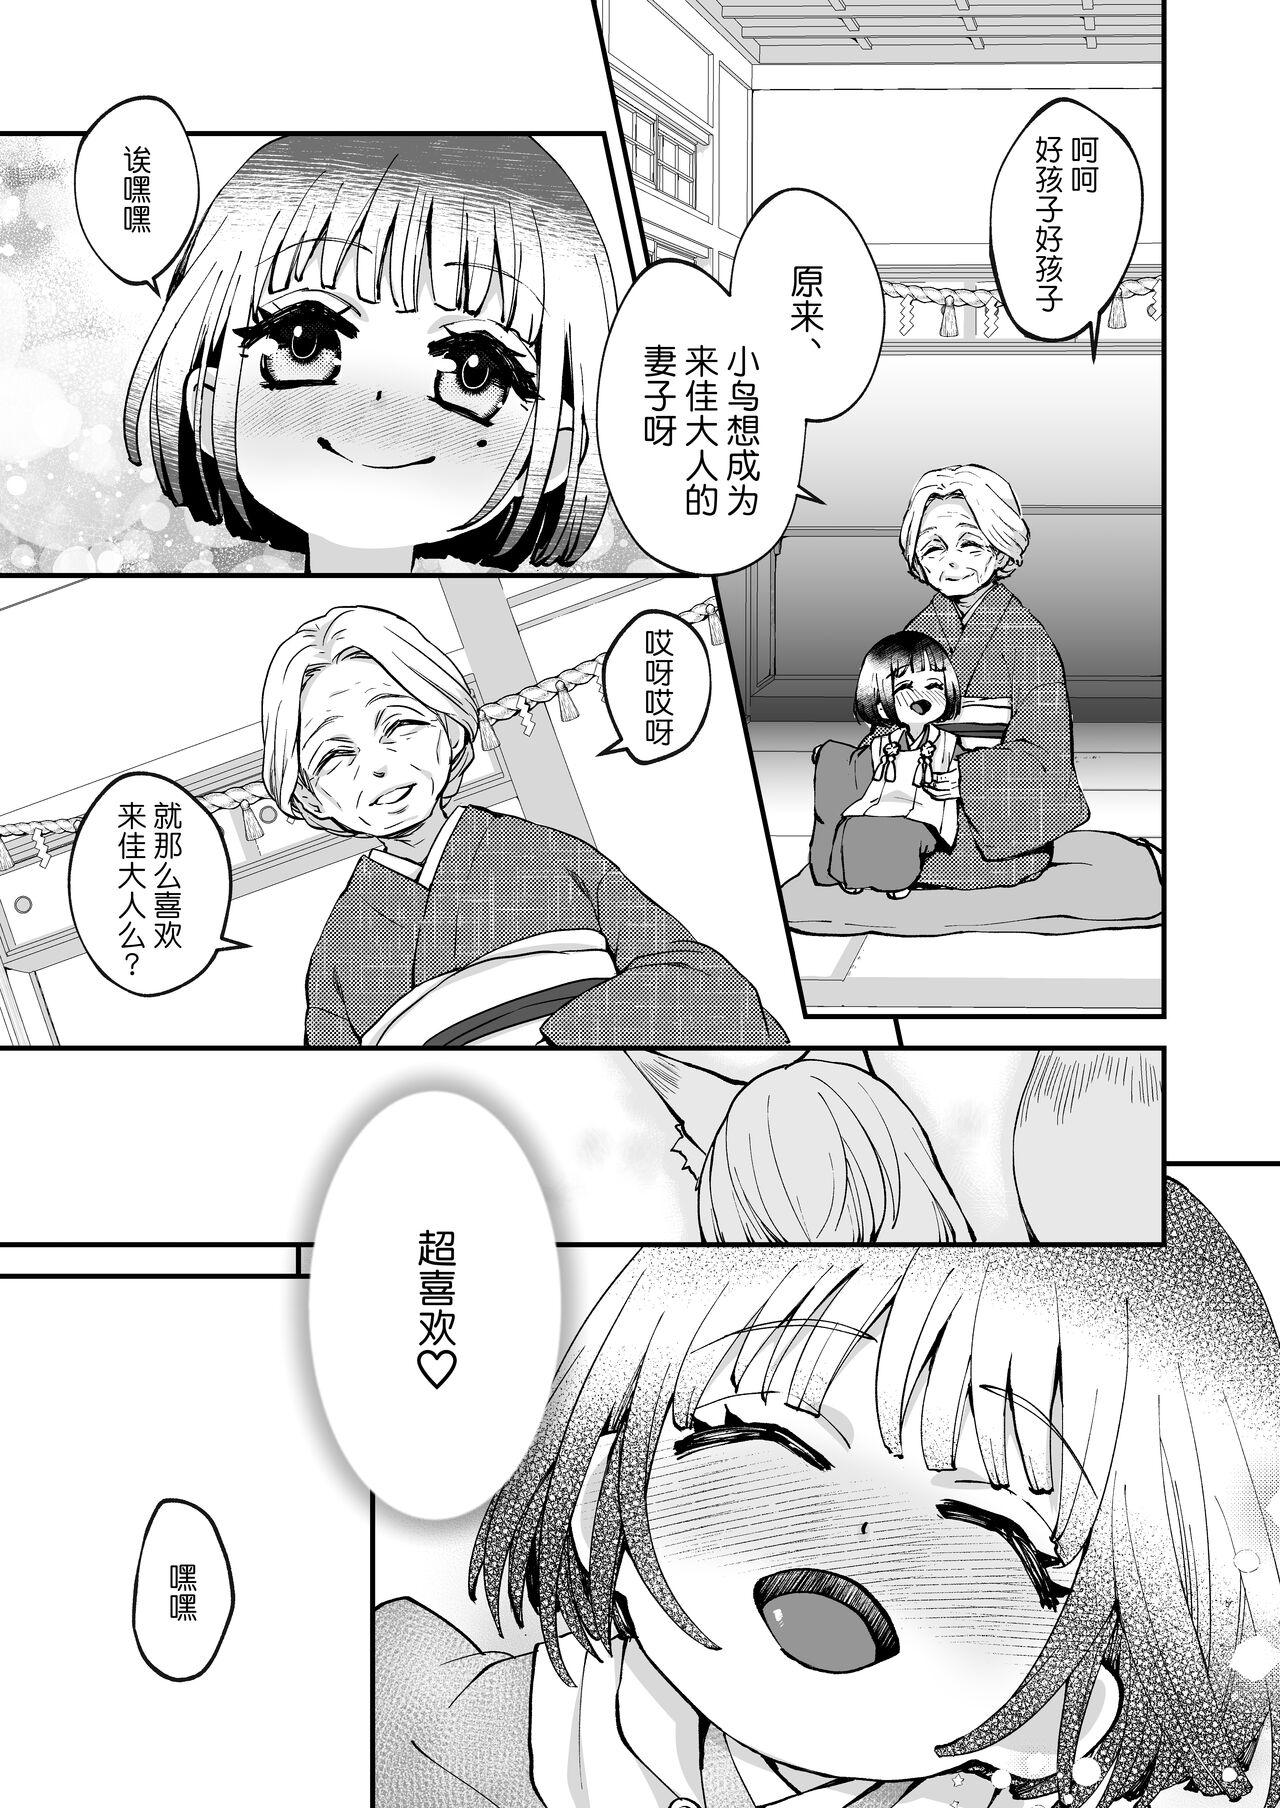 4some Okitsune-sama wa Risei ga Motanai Sfm - Page 3